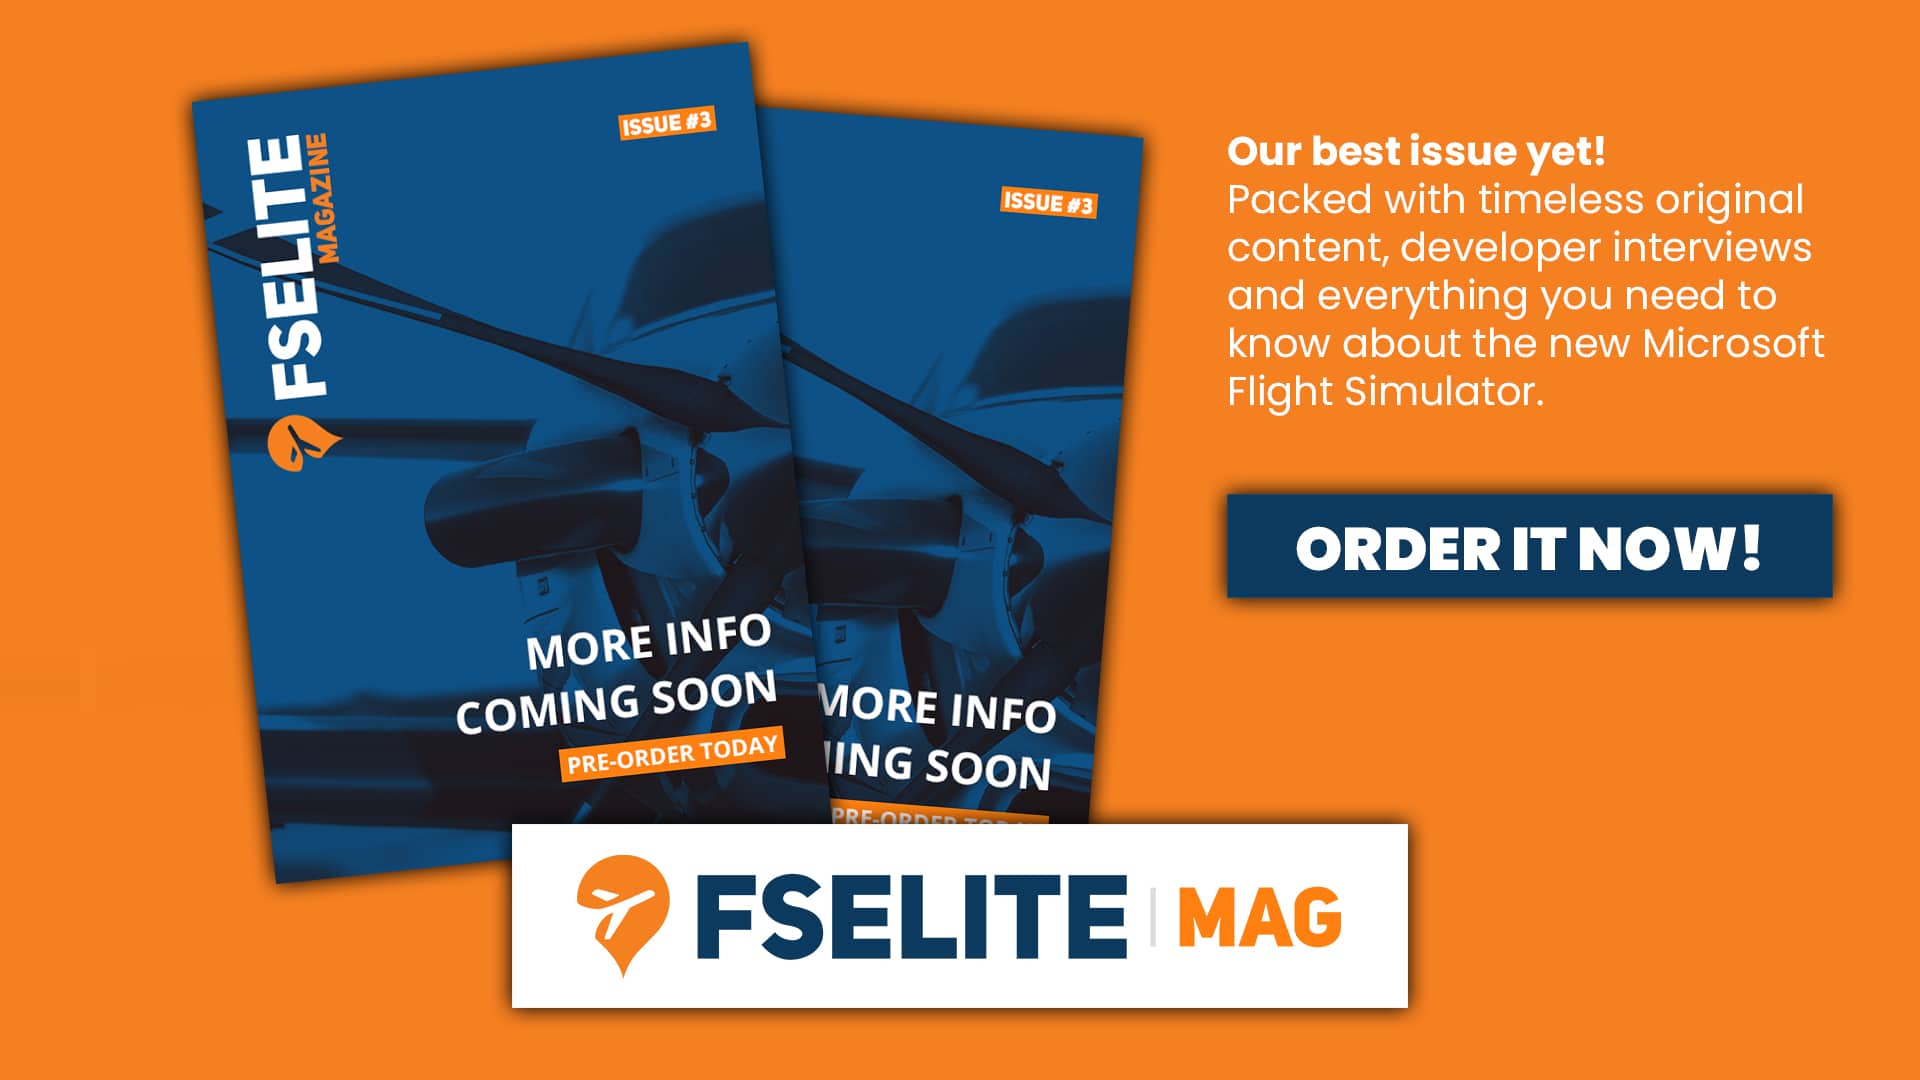 Pre-Order the FSElite Mag